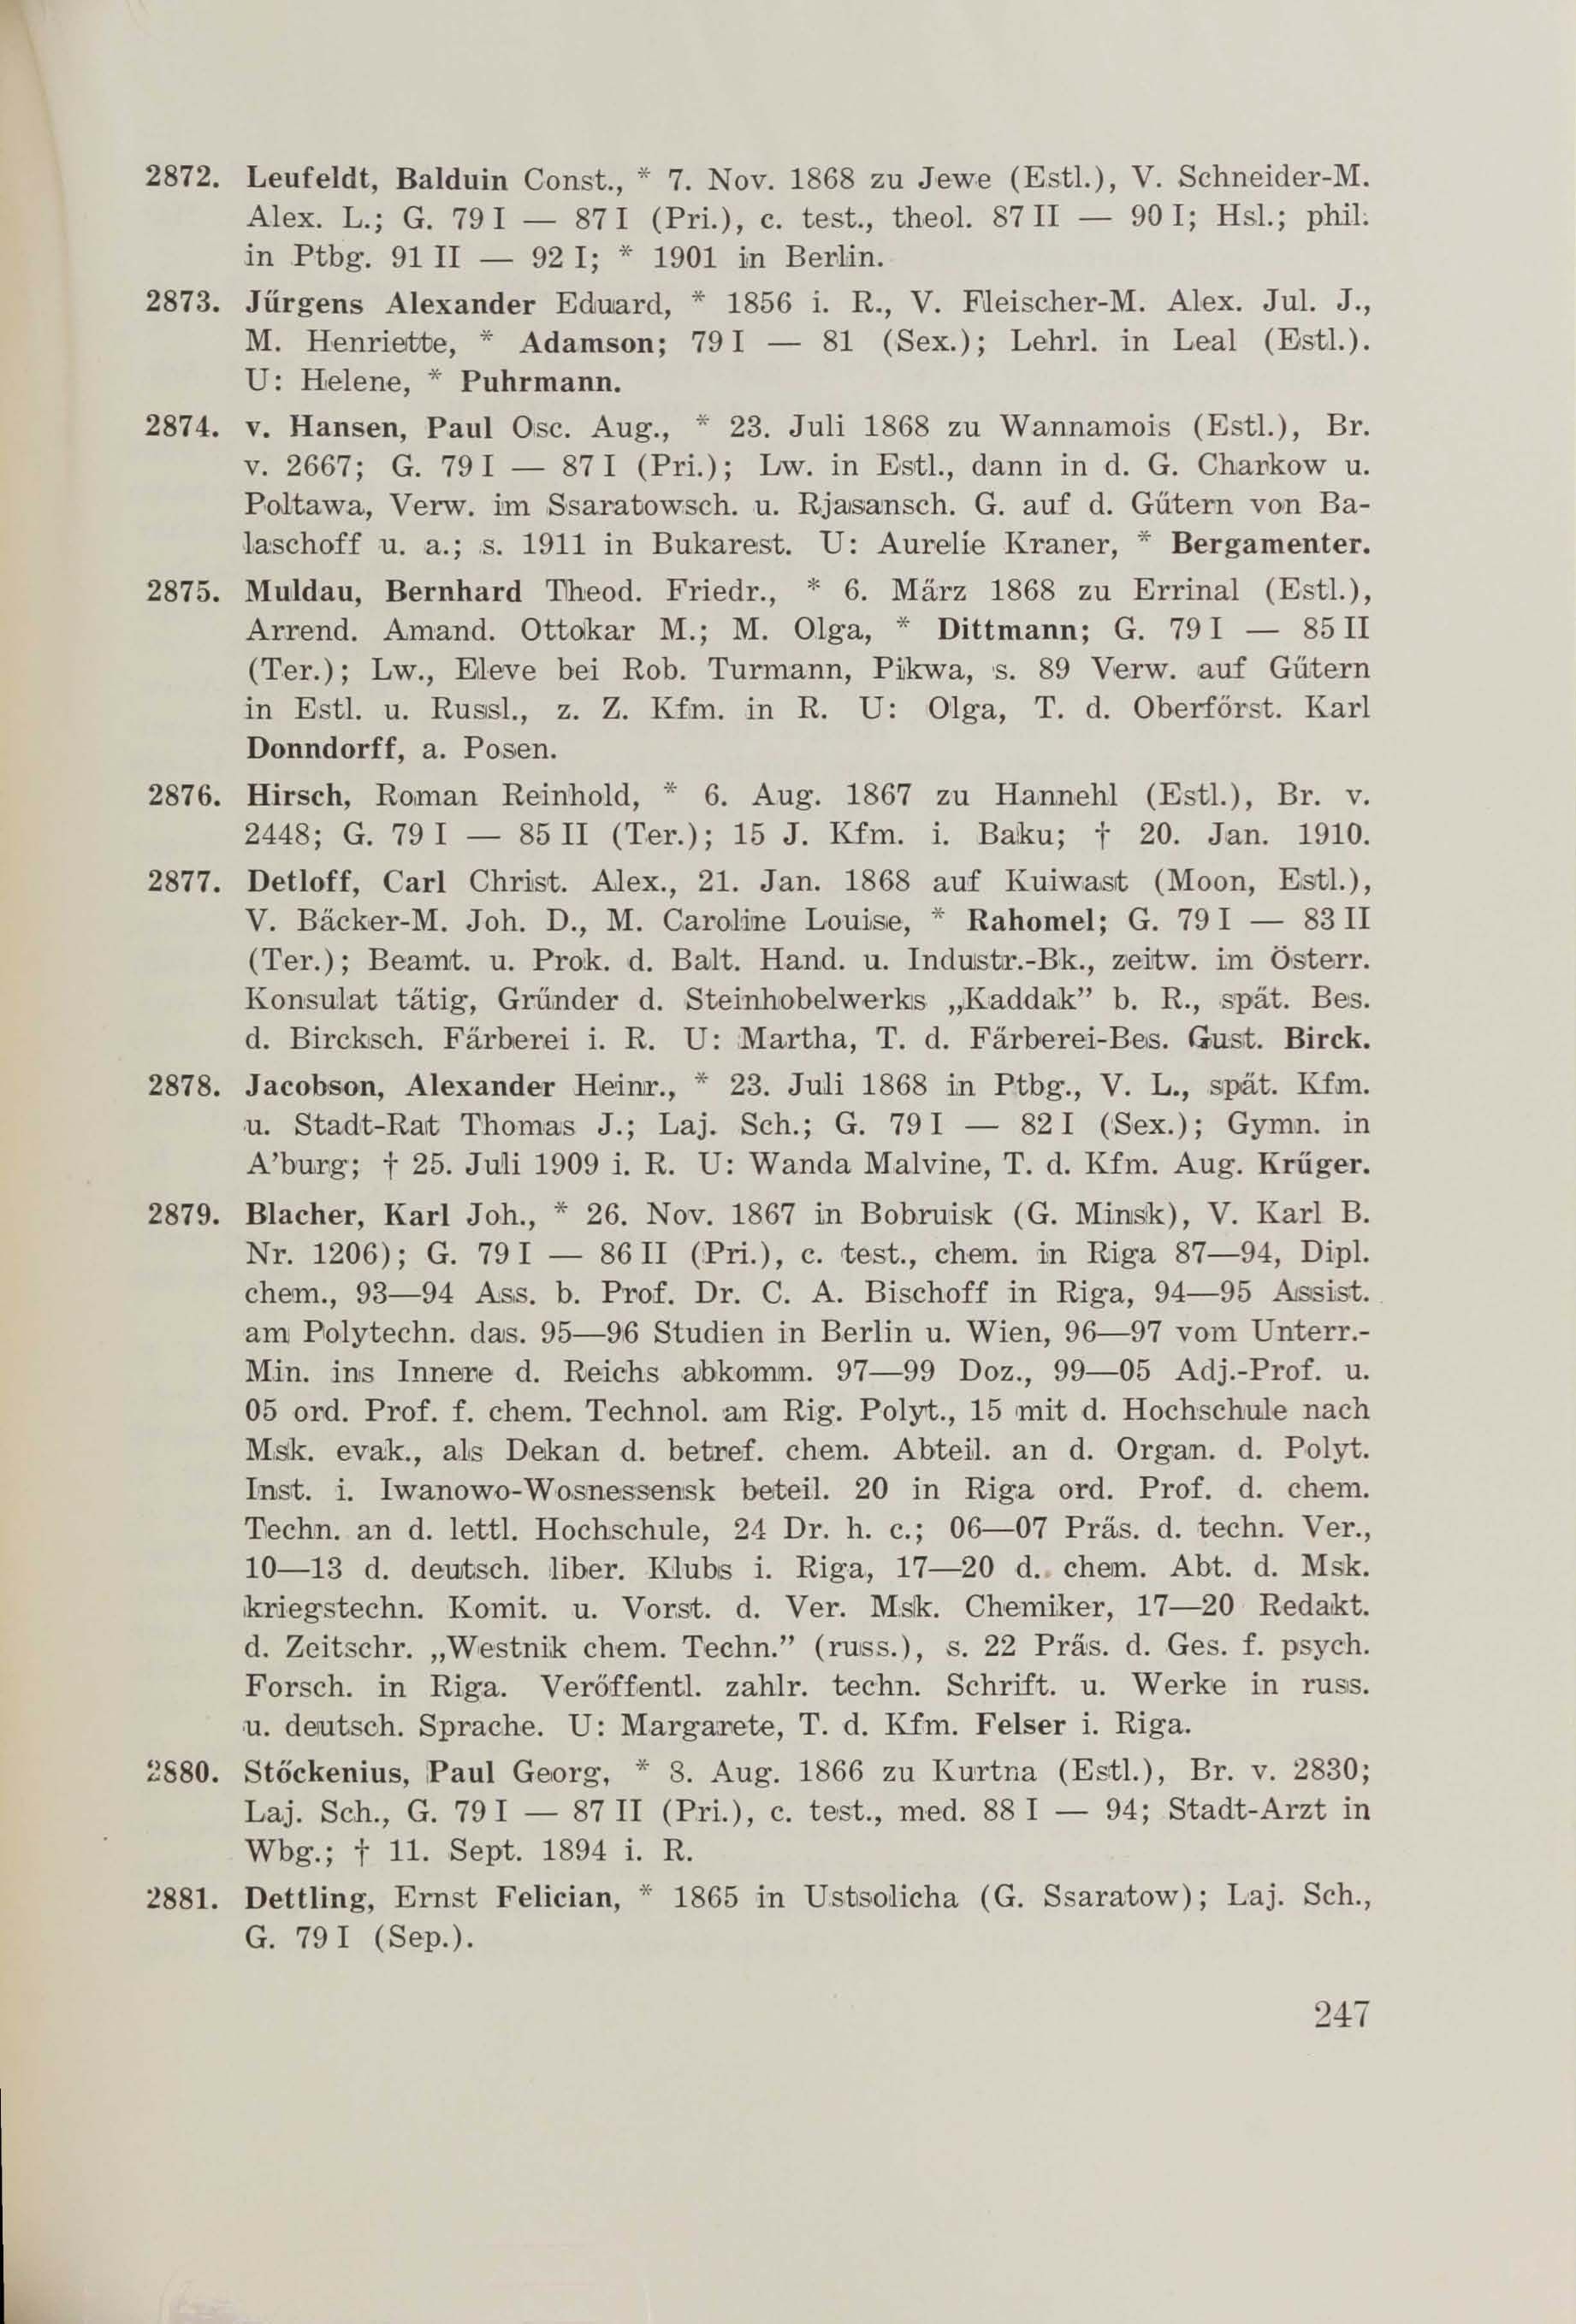 Schüler-Verzeichnis des Revalschen Gouvernements-Gymnasiums 1805–1890 (1931) | 257. (247) Main body of text